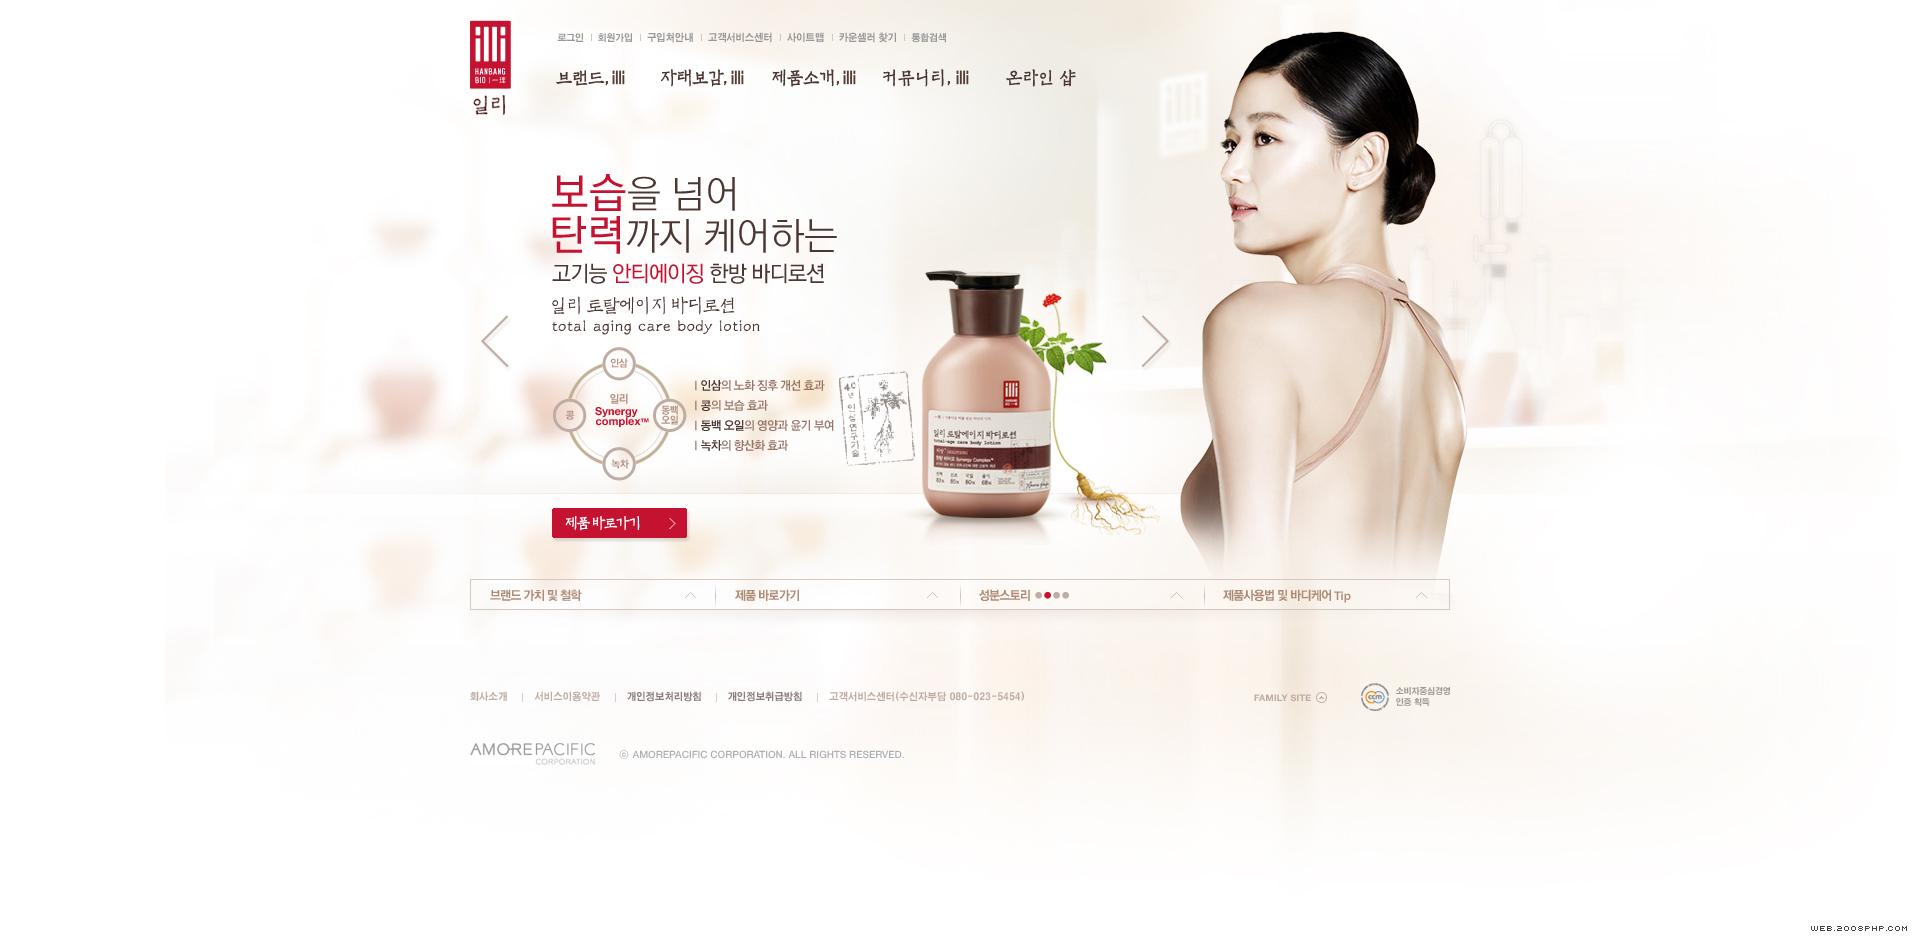 中药生物解决方案!韩国illi生物美容化妆品产品